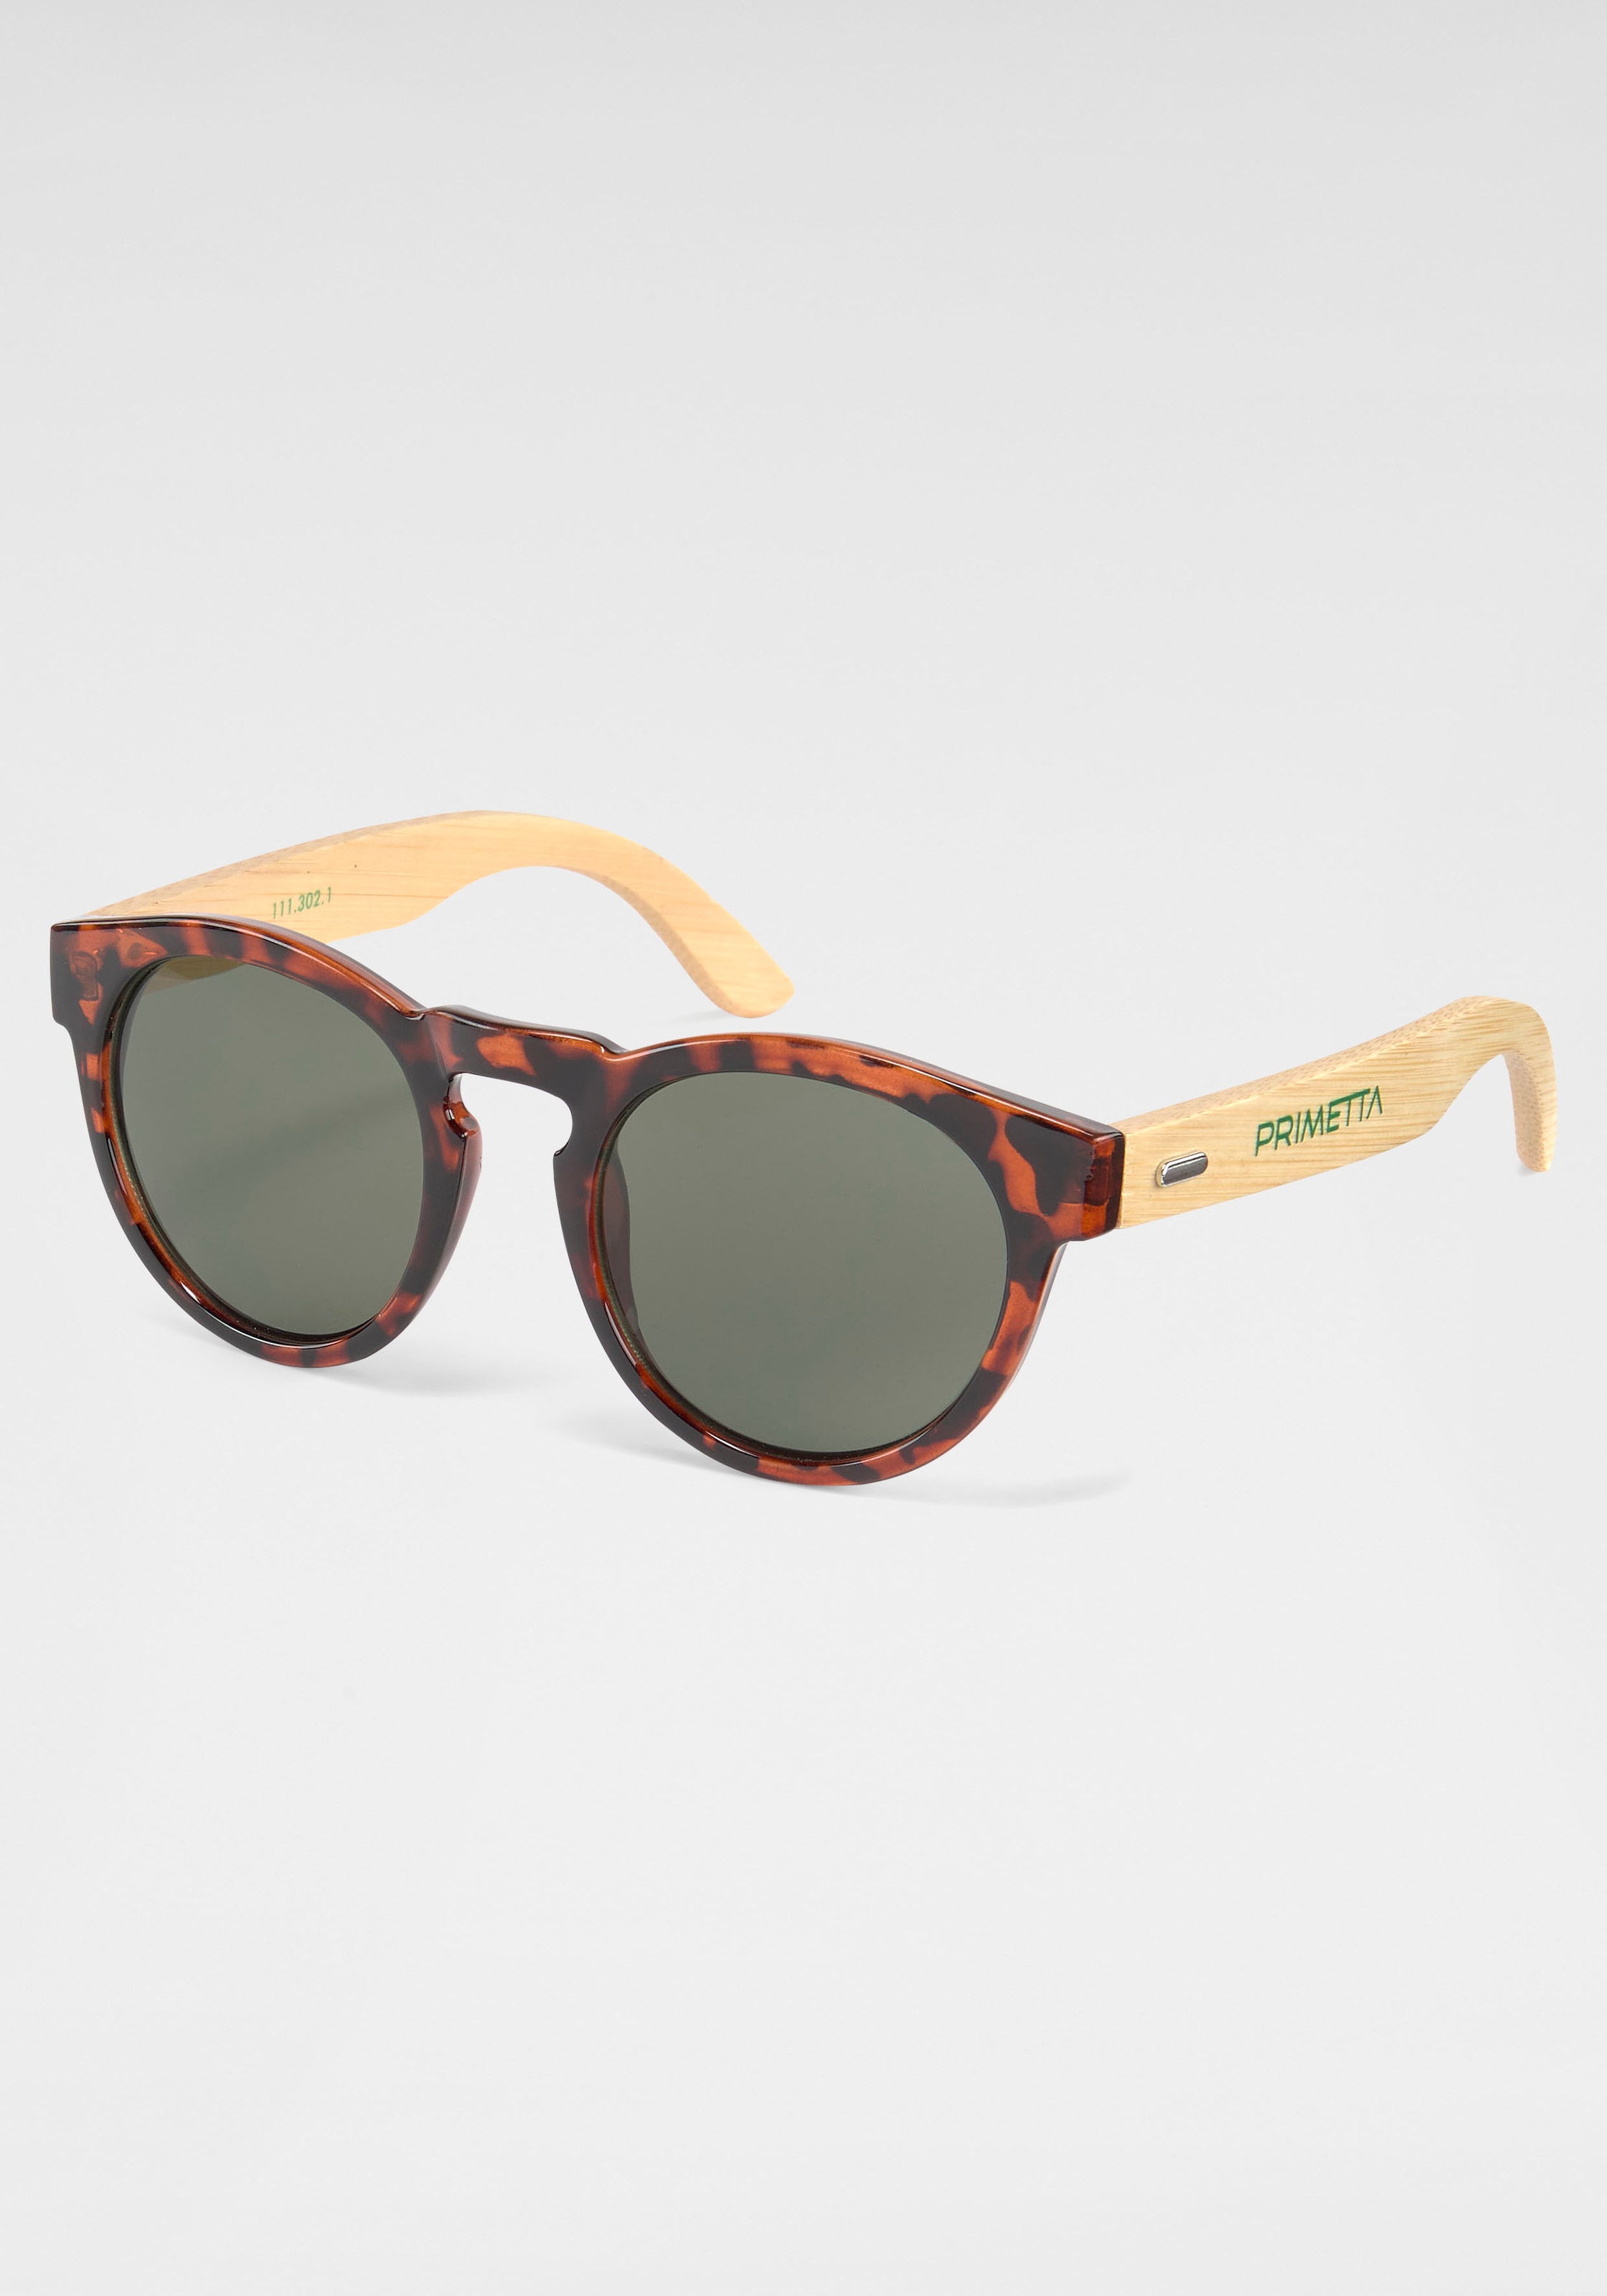 PRIMETTA Eyewear Sonnenbrille BAUR | kaufen